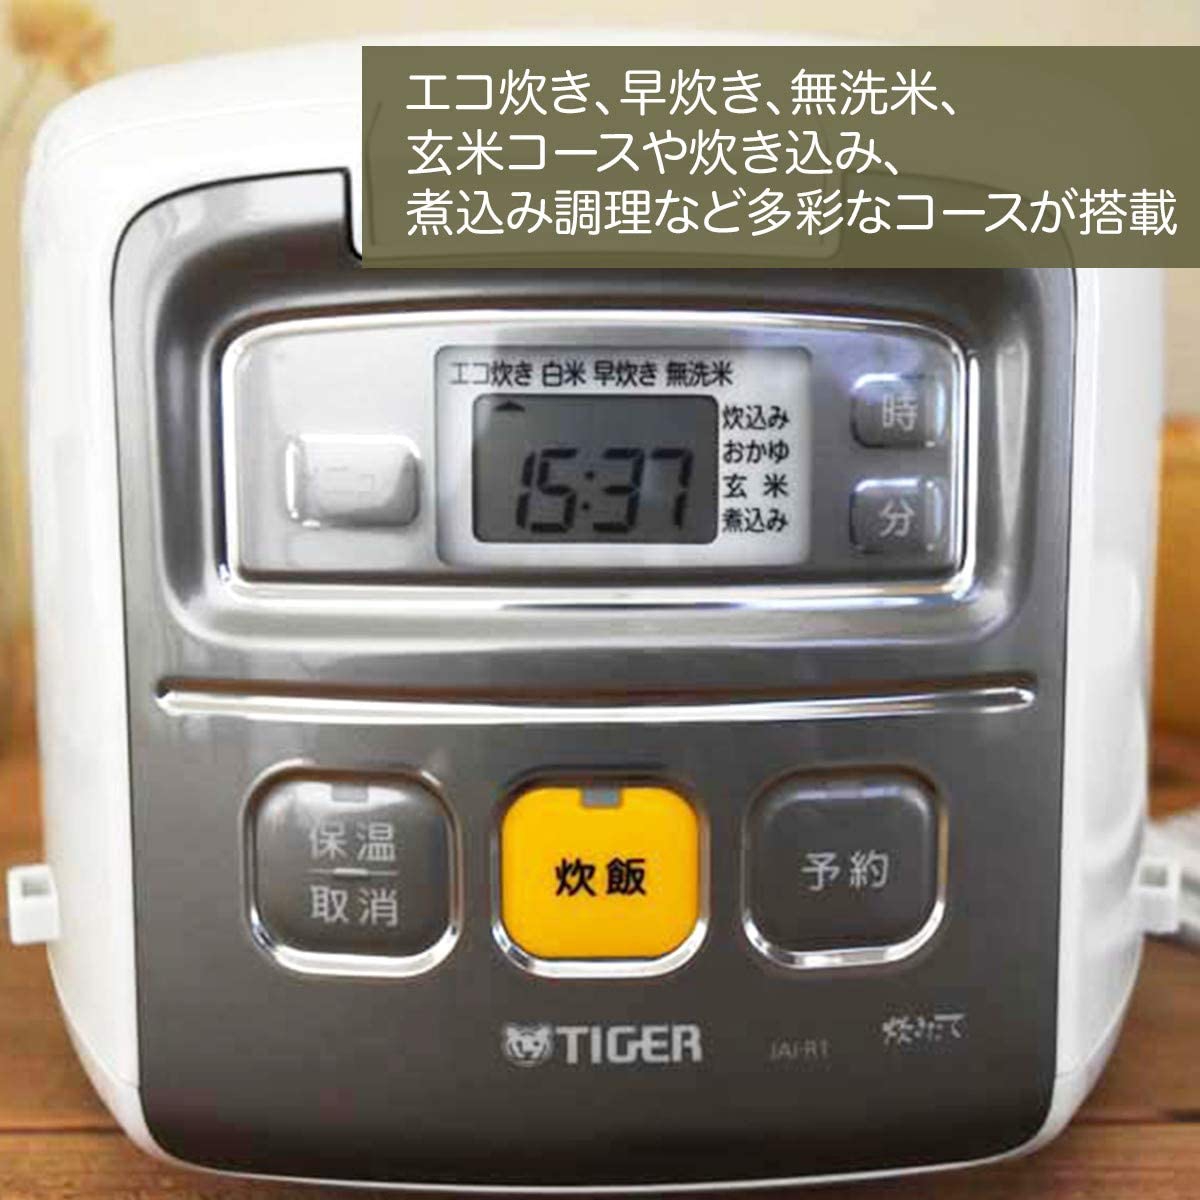 タイガー魔法瓶(TIGER) マイコン炊飯ジャー JAI-R551-Wの商品画像4 